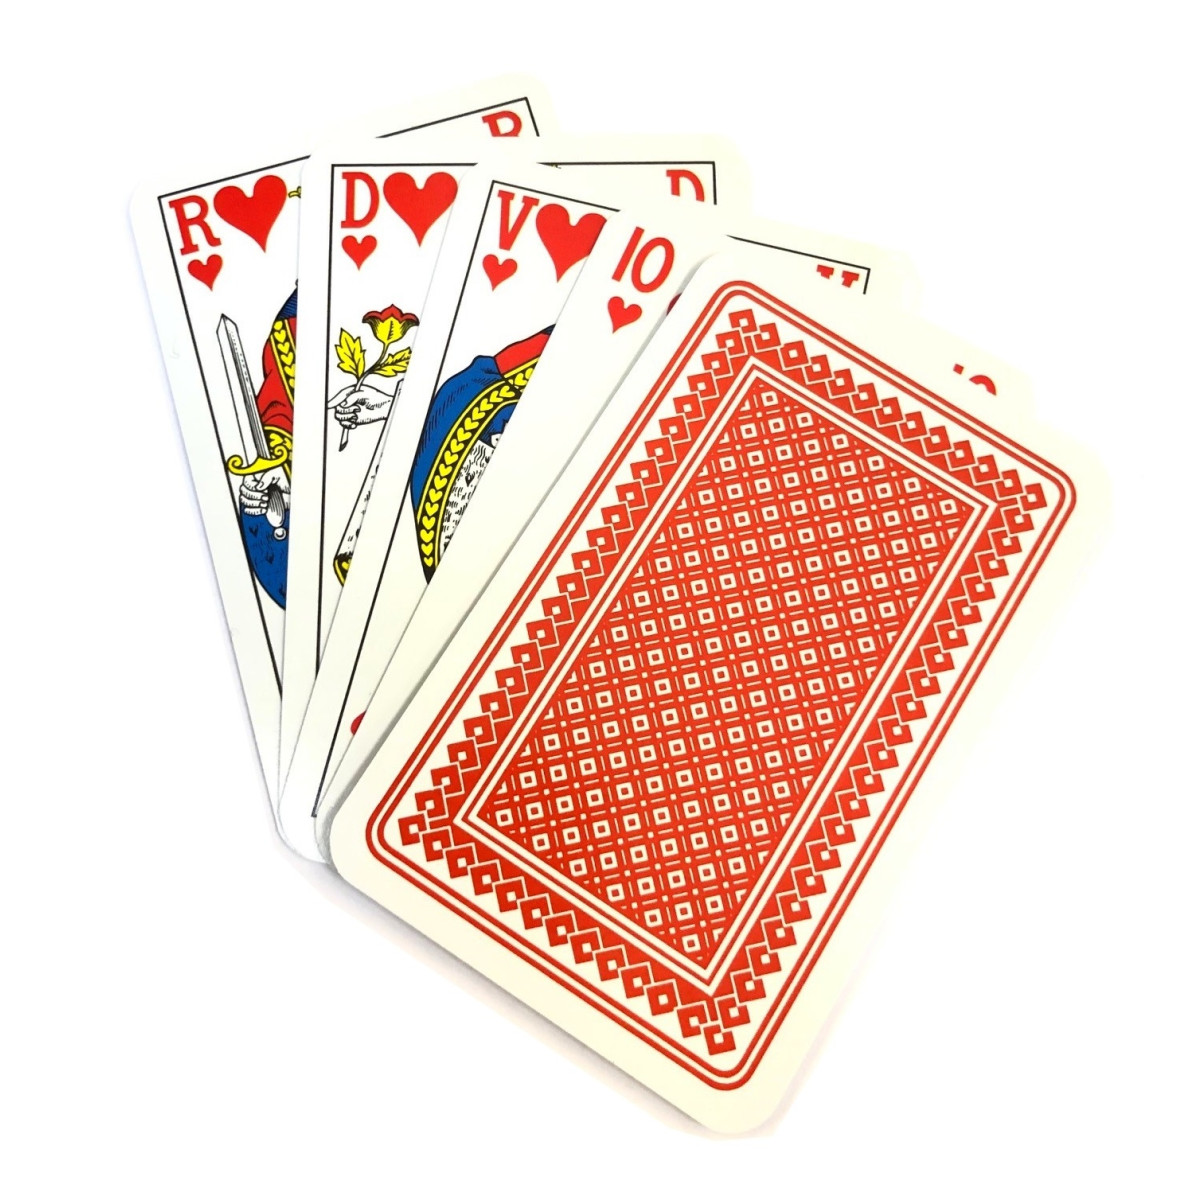 Zenuw Een goede vriend Demon Play Kaartspel Carlton 52 kaarten - frans - rood kopen op Amusement.be